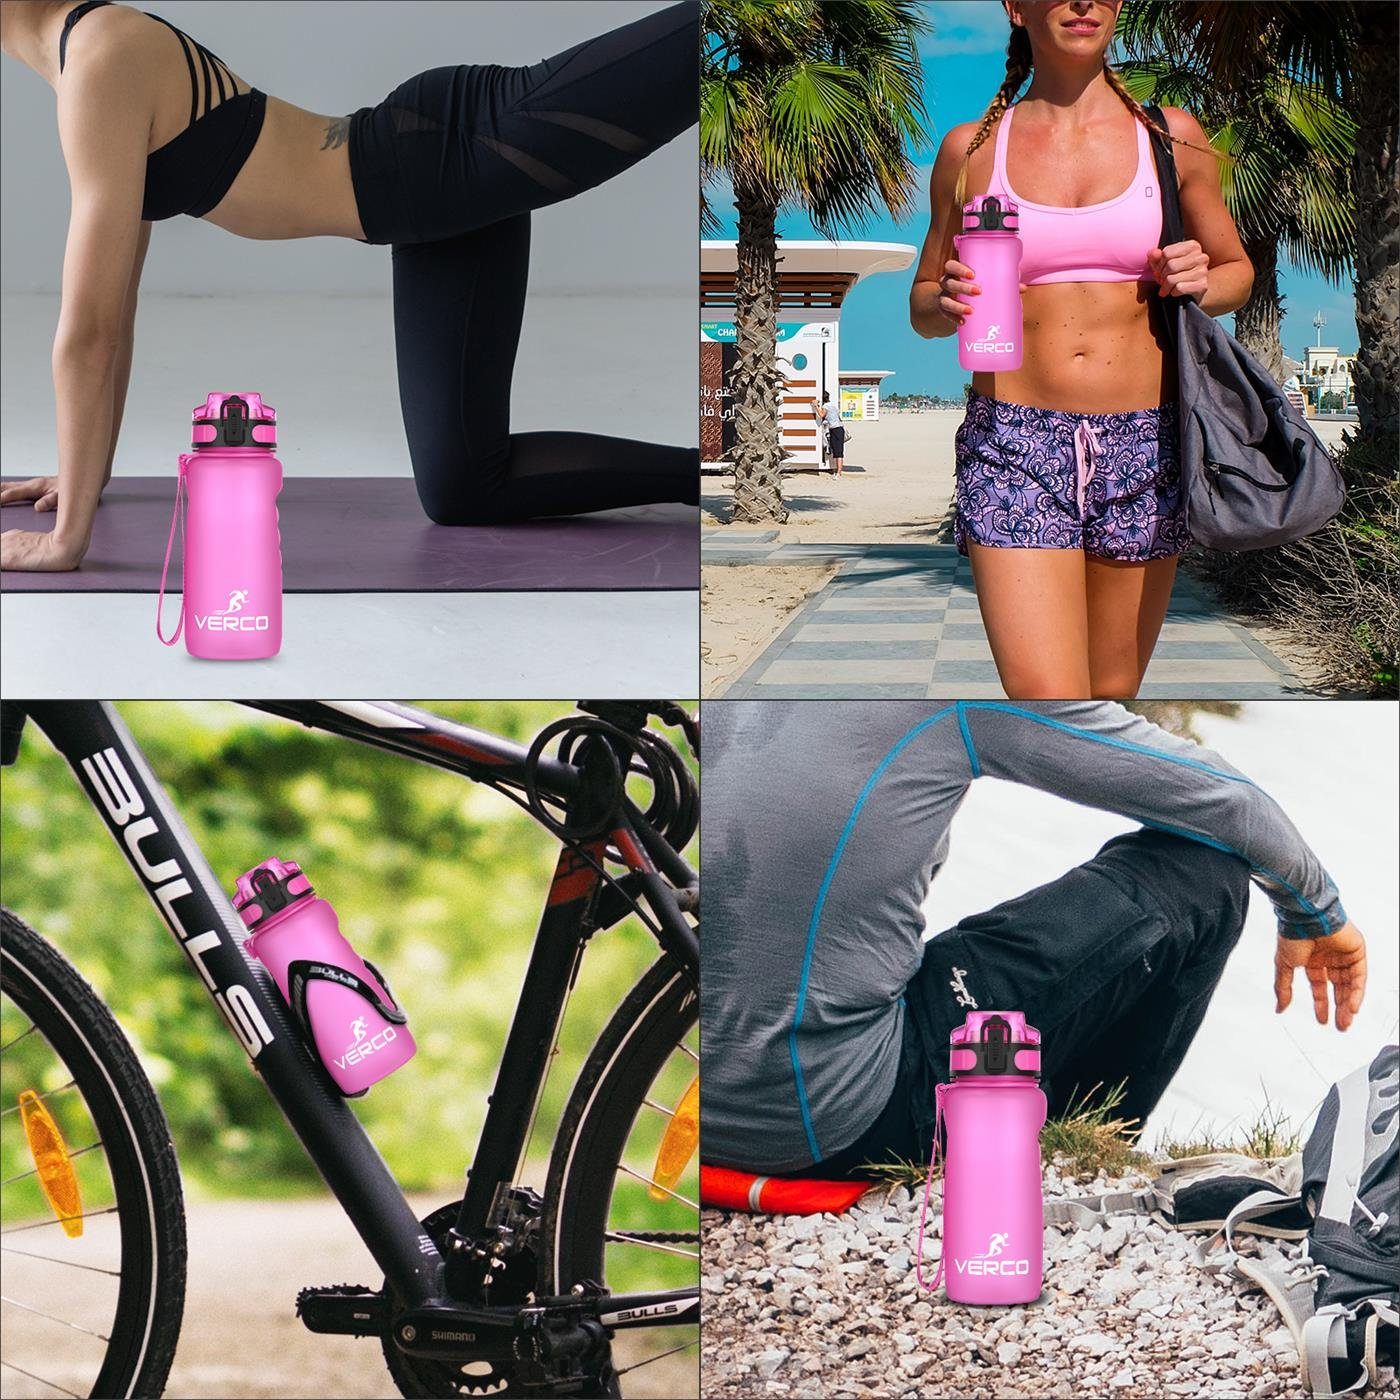 650 0,65 mit BPA Sport ml Flasche, Frei VERCO wiederverwendbar nachhaltig Wasserflasche Pink Liter Tritan Fruchtsieb Trinkflasche